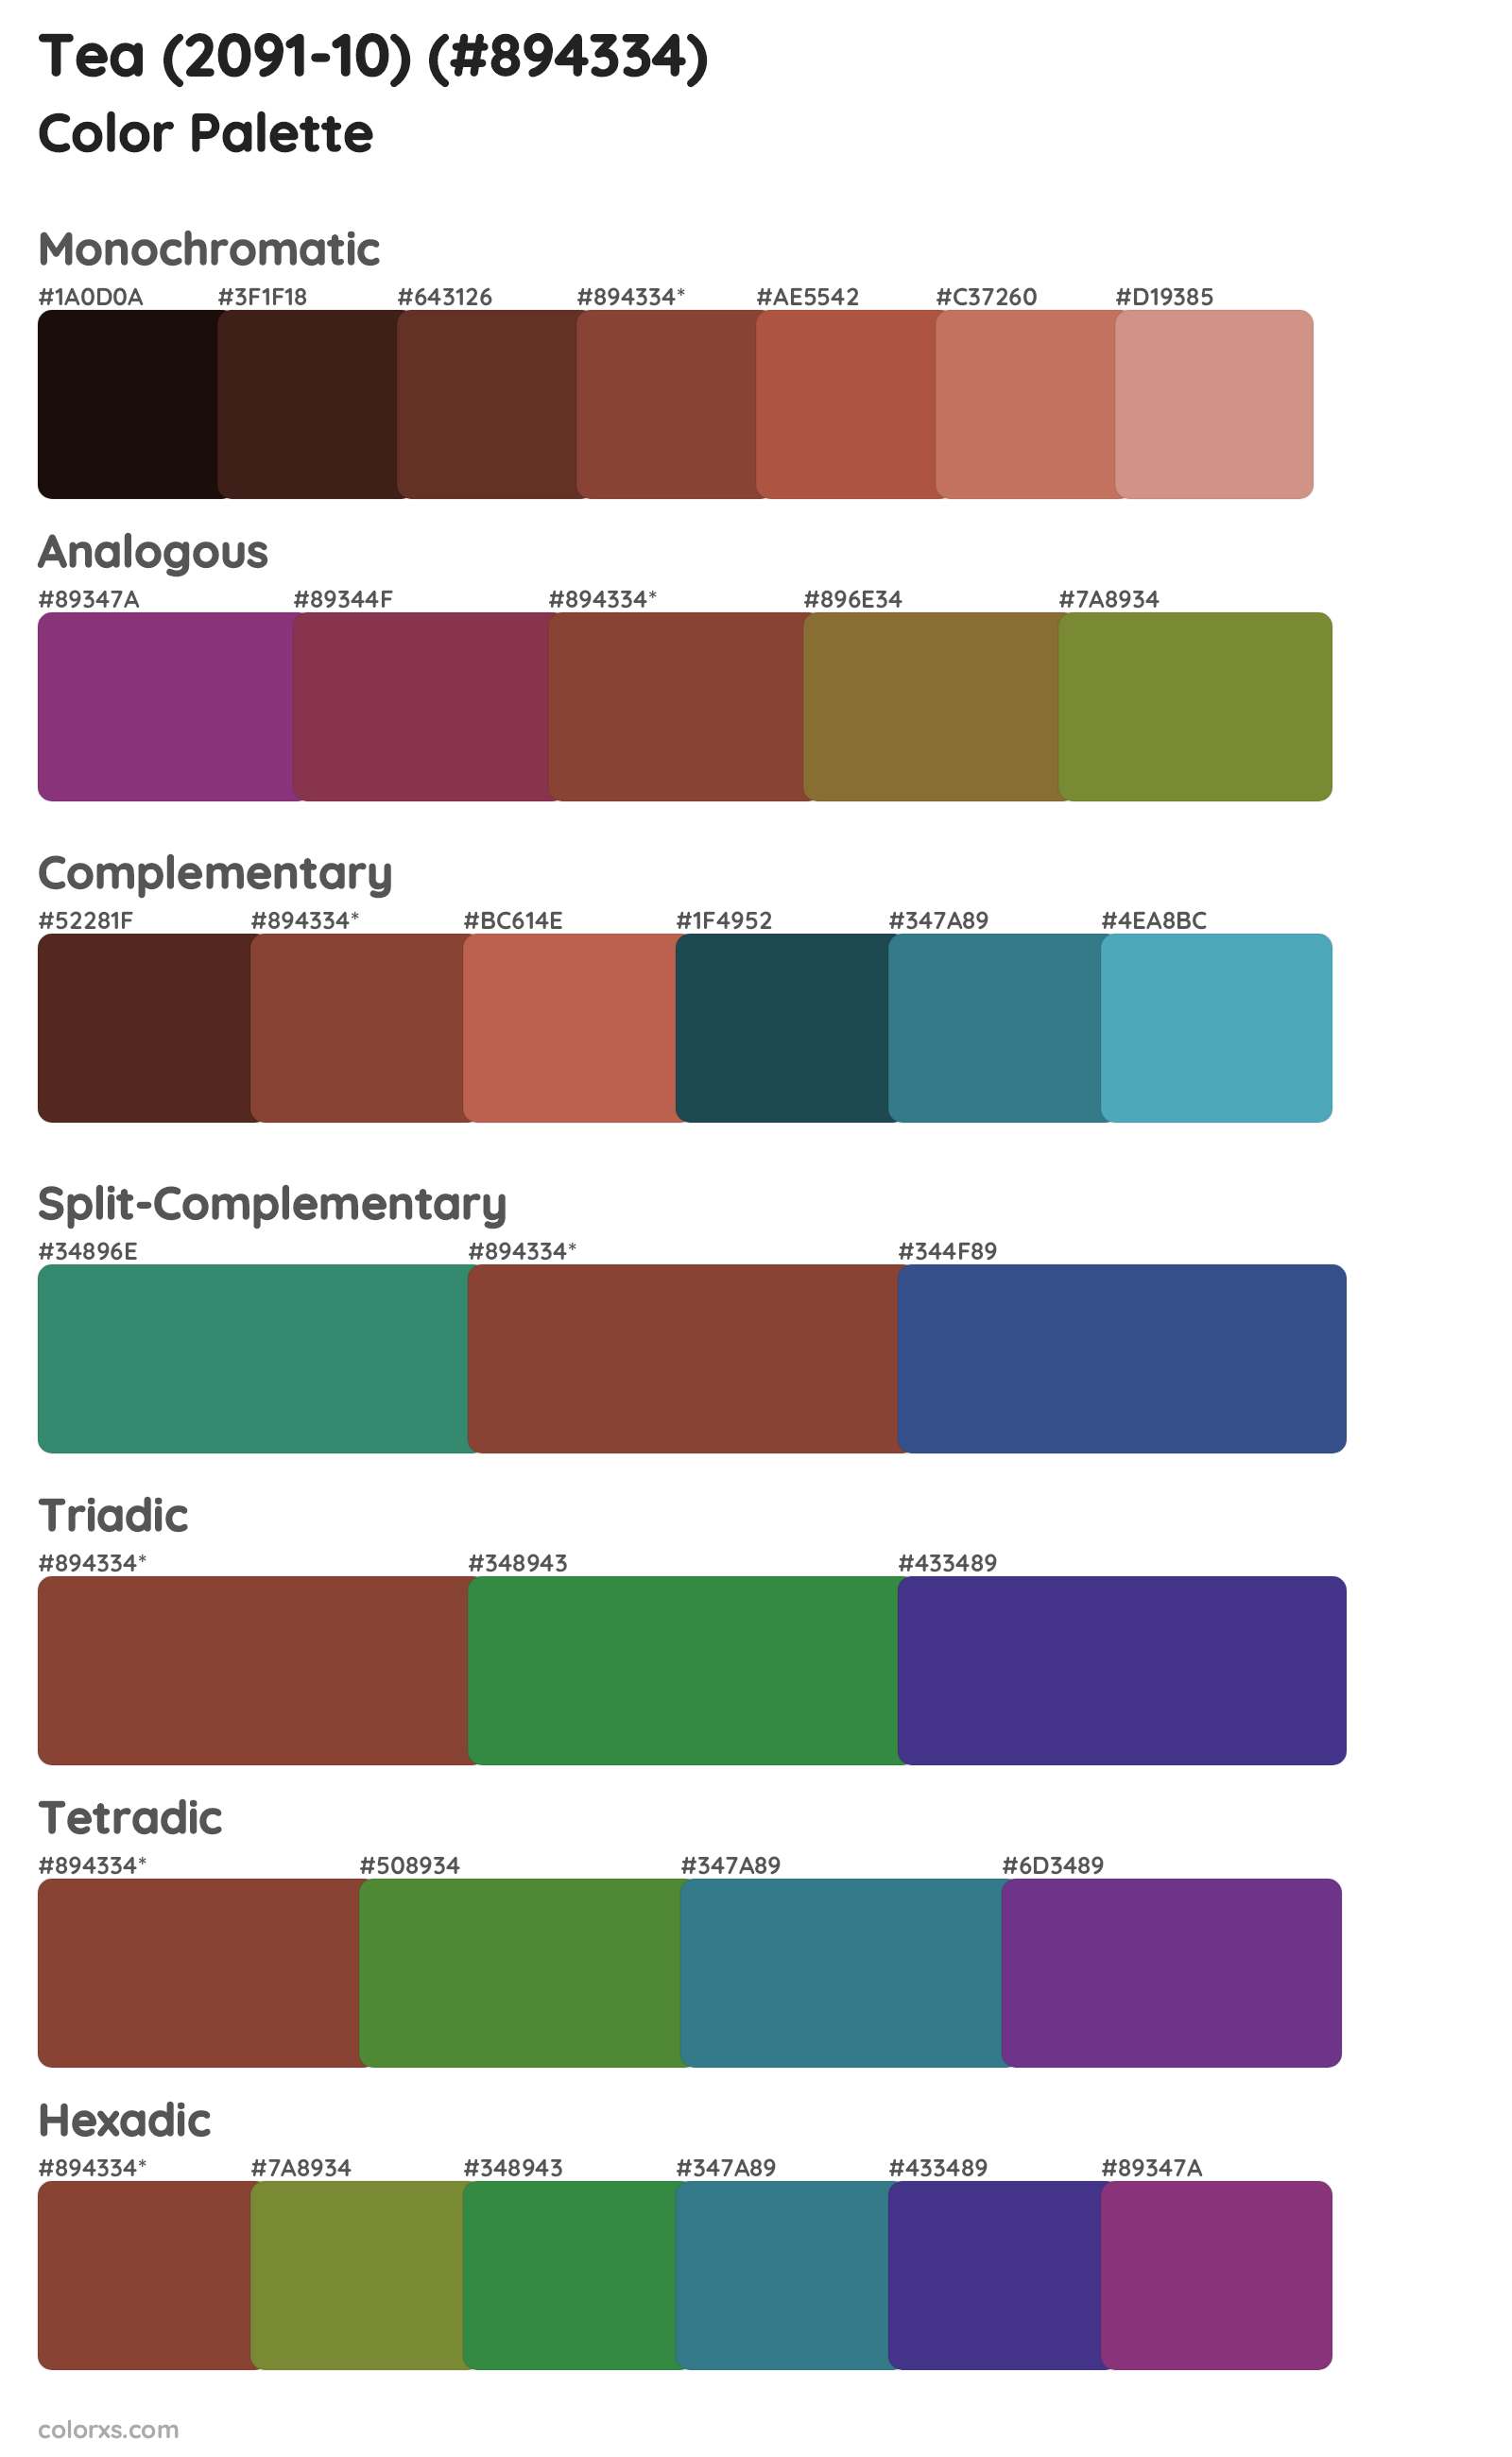 Tea (2091-10) Color Scheme Palettes